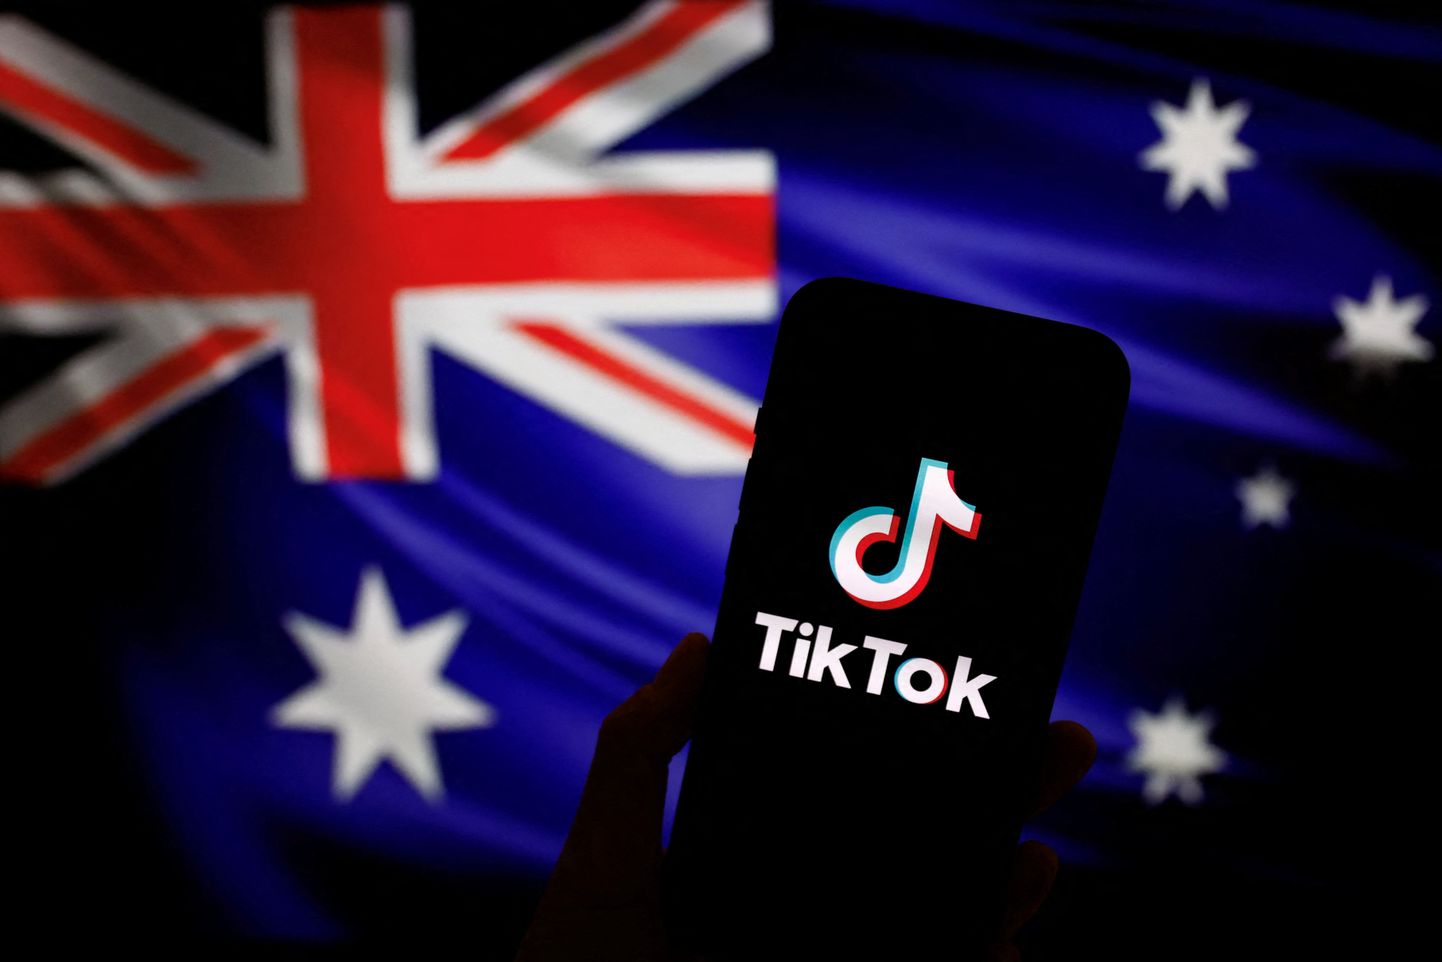 Hiina päritolu videomeelelahutuse äpp TikTok on nüüd ka Austraalia ametnike seas keelatud, mis vallandas Hiina protesti.